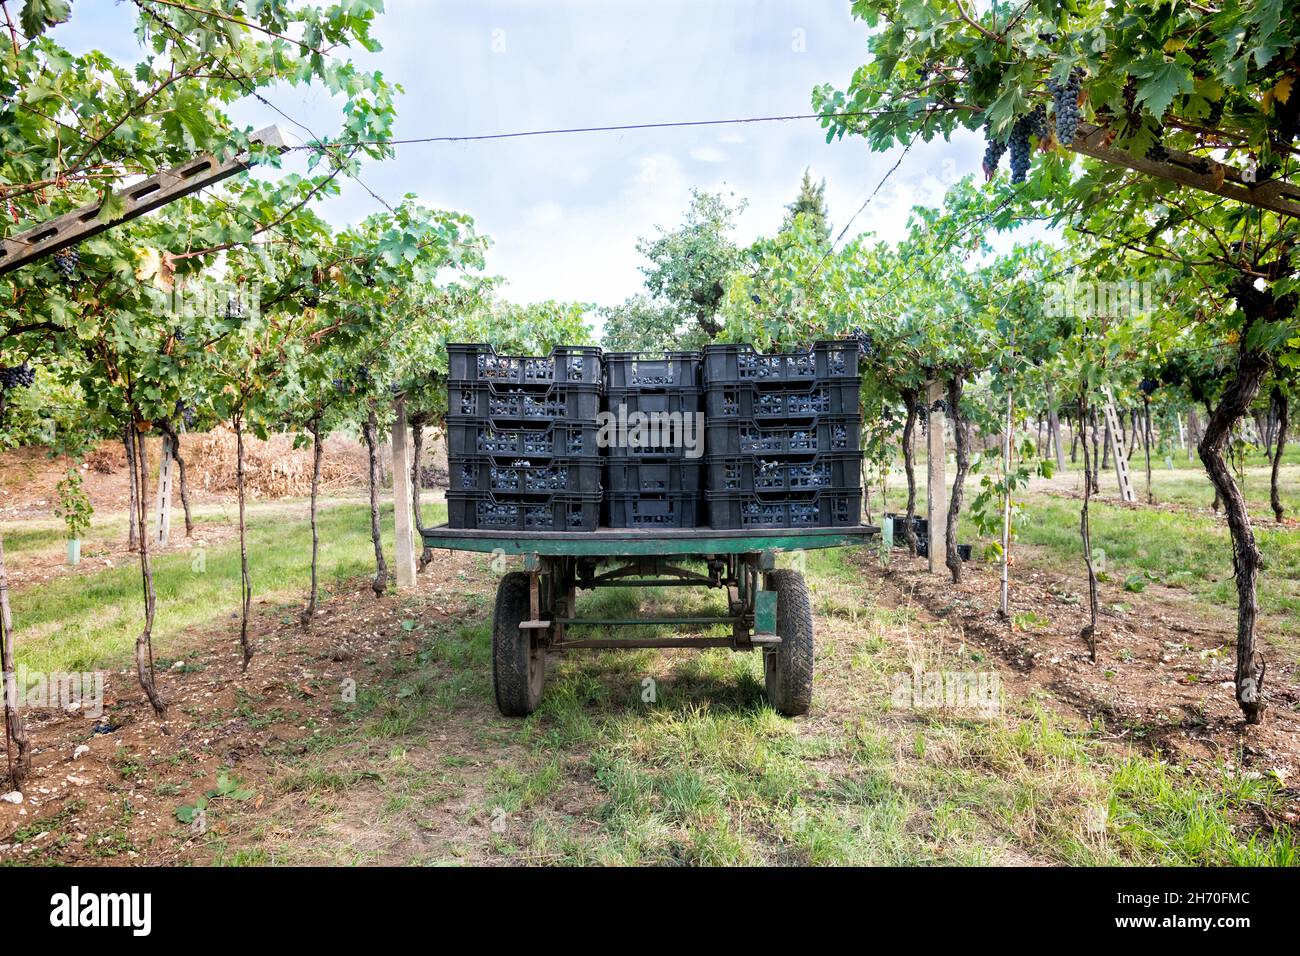 Farm Trailer beladen mit geernteten schwarzen Trauben in Kisten stehen zwischen zurücktretenden Reihen von Weinreben in einem Weinberg auf einem Weingut in einem Weinbau konc Stockfoto